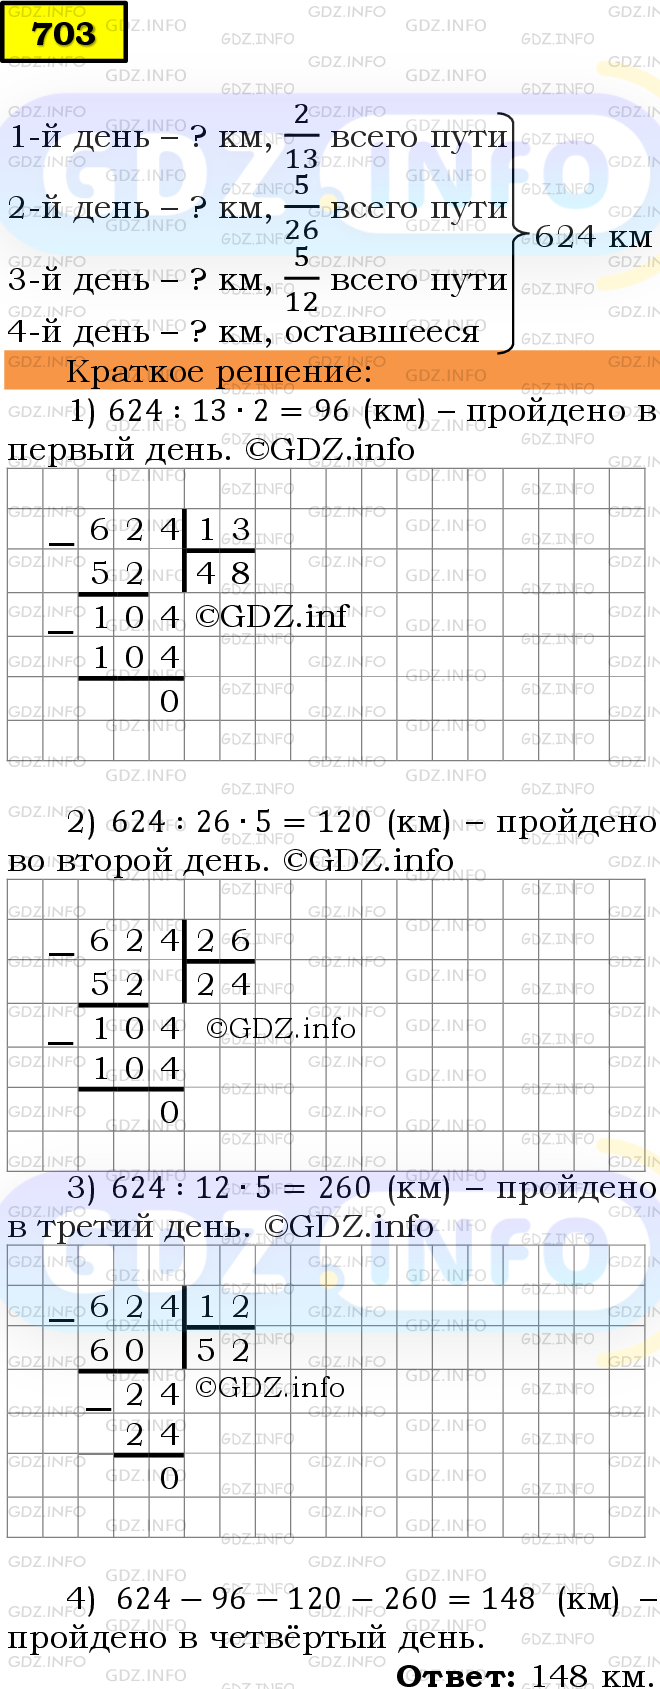 Фото решения 6: Номер №703 из ГДЗ по Математике 5 класс: Мерзляк А.Г. г.